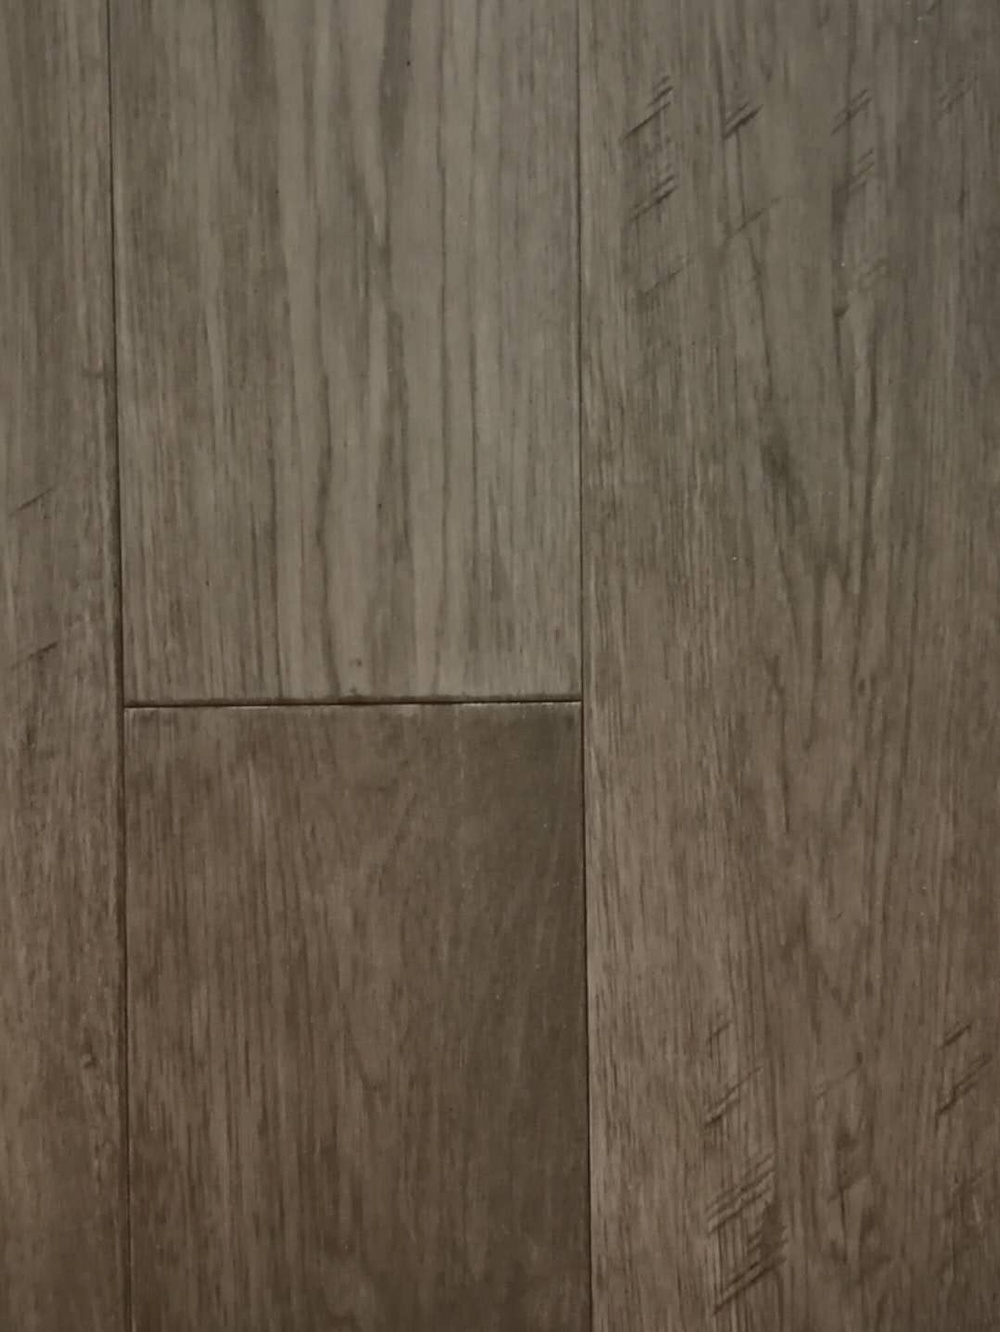 Silver Wolf Hardwood Floor Installation Toronto Mississauga